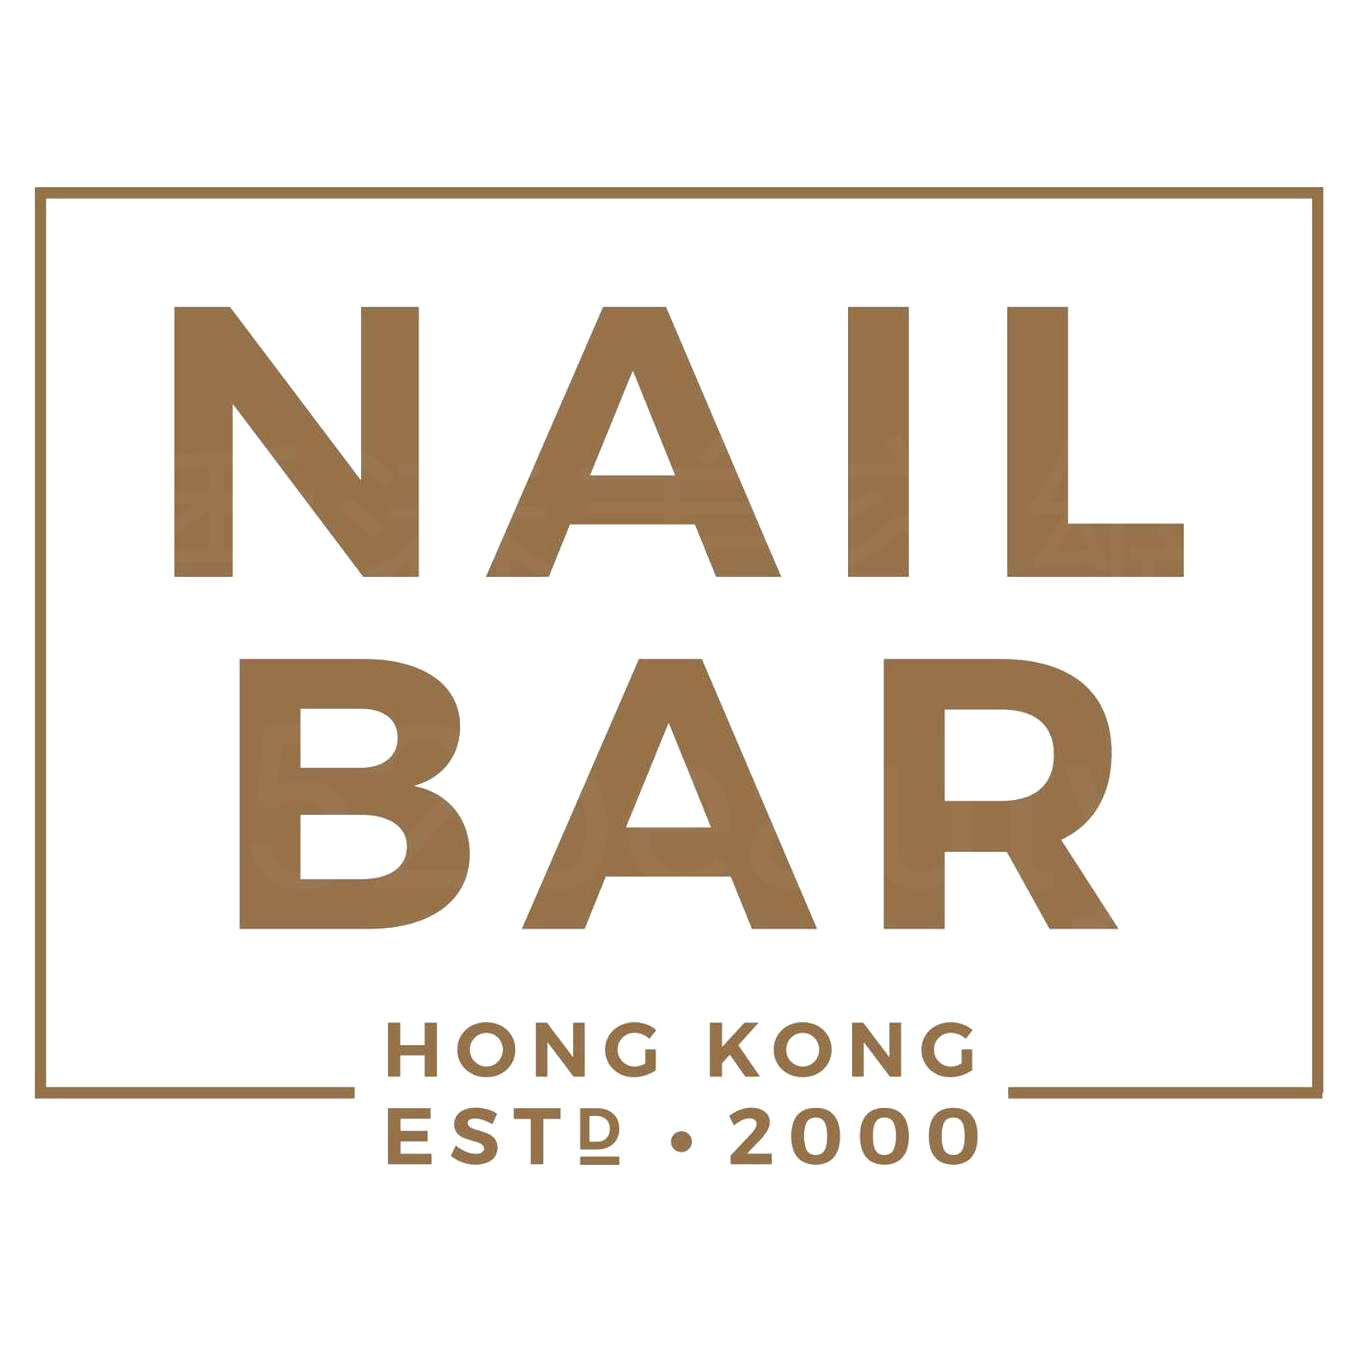 香港美容網 Hong Kong Beauty Salon 美容院 / 美容師: NAIL BAR (坑口店) (光榮結業)